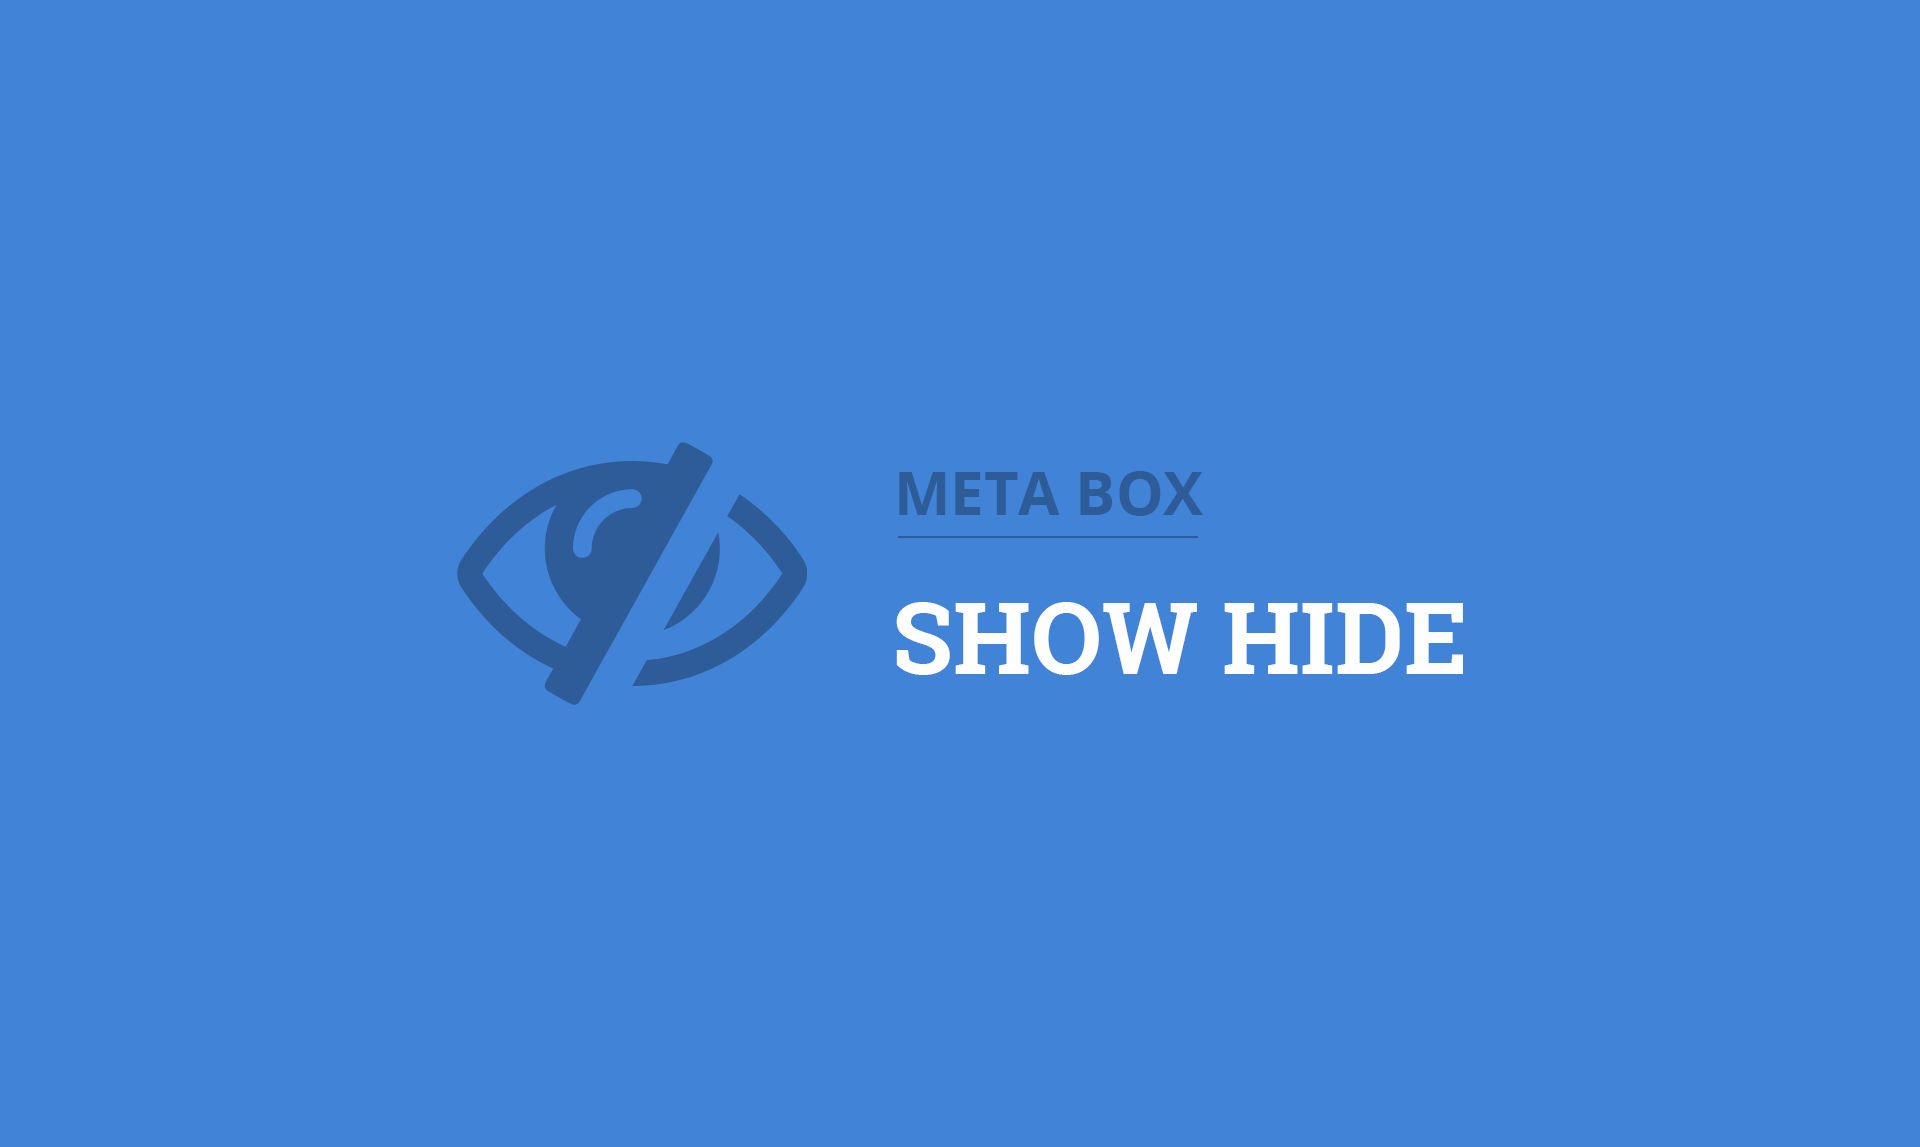 Meta Box Show Hide.jpg